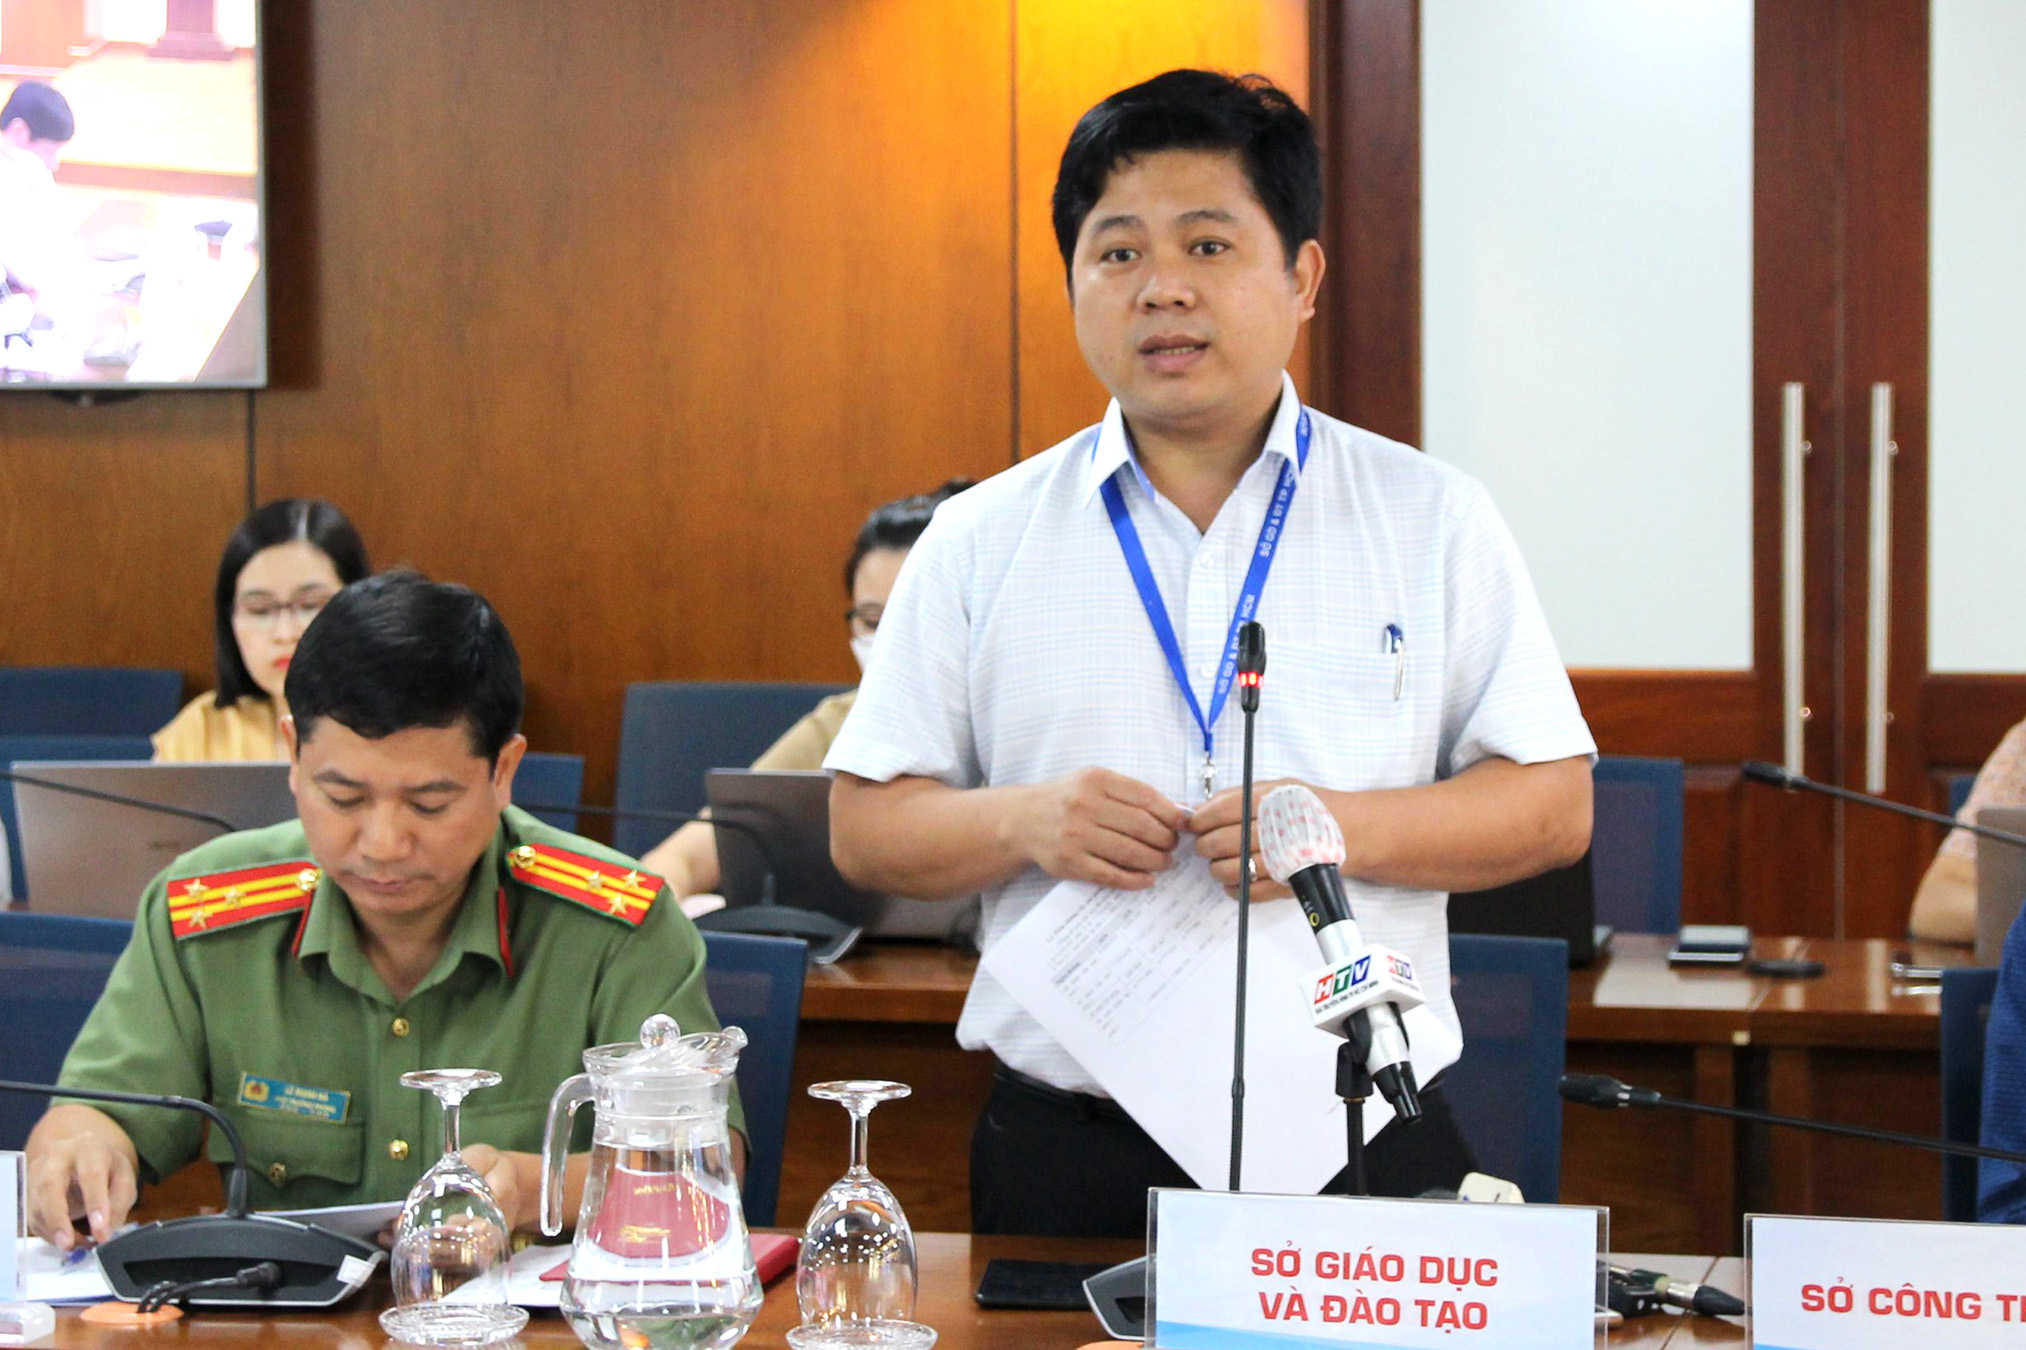 Đồng chí Hồ Tấn Minh - Chánh Văn phòng Sở GD&ĐT TP. Hồ Chí Minh phát biểu tại buổi họp báo (Ảnh: HH)